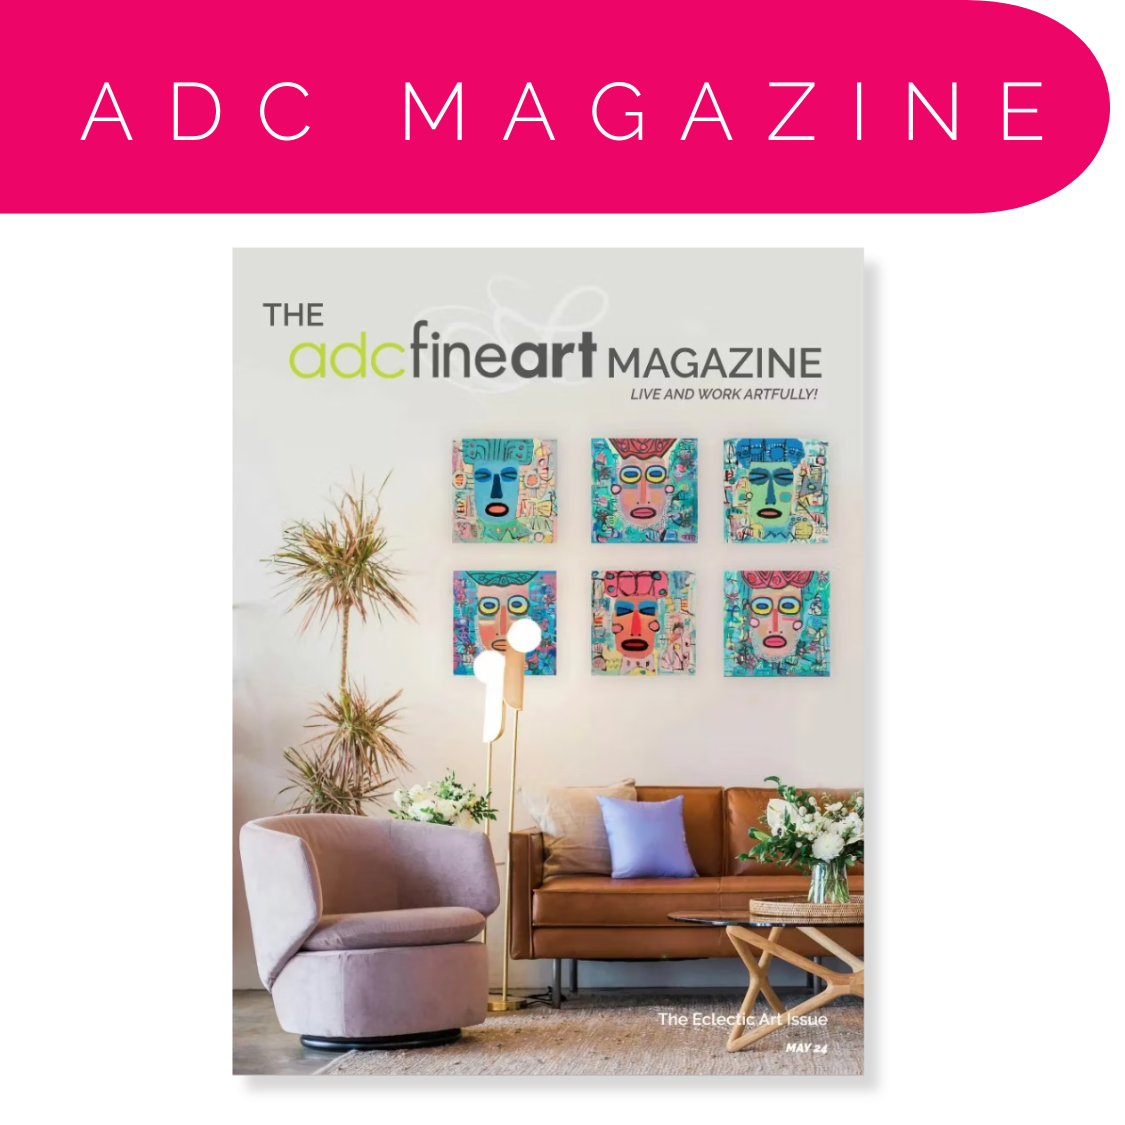 ADC Magazines